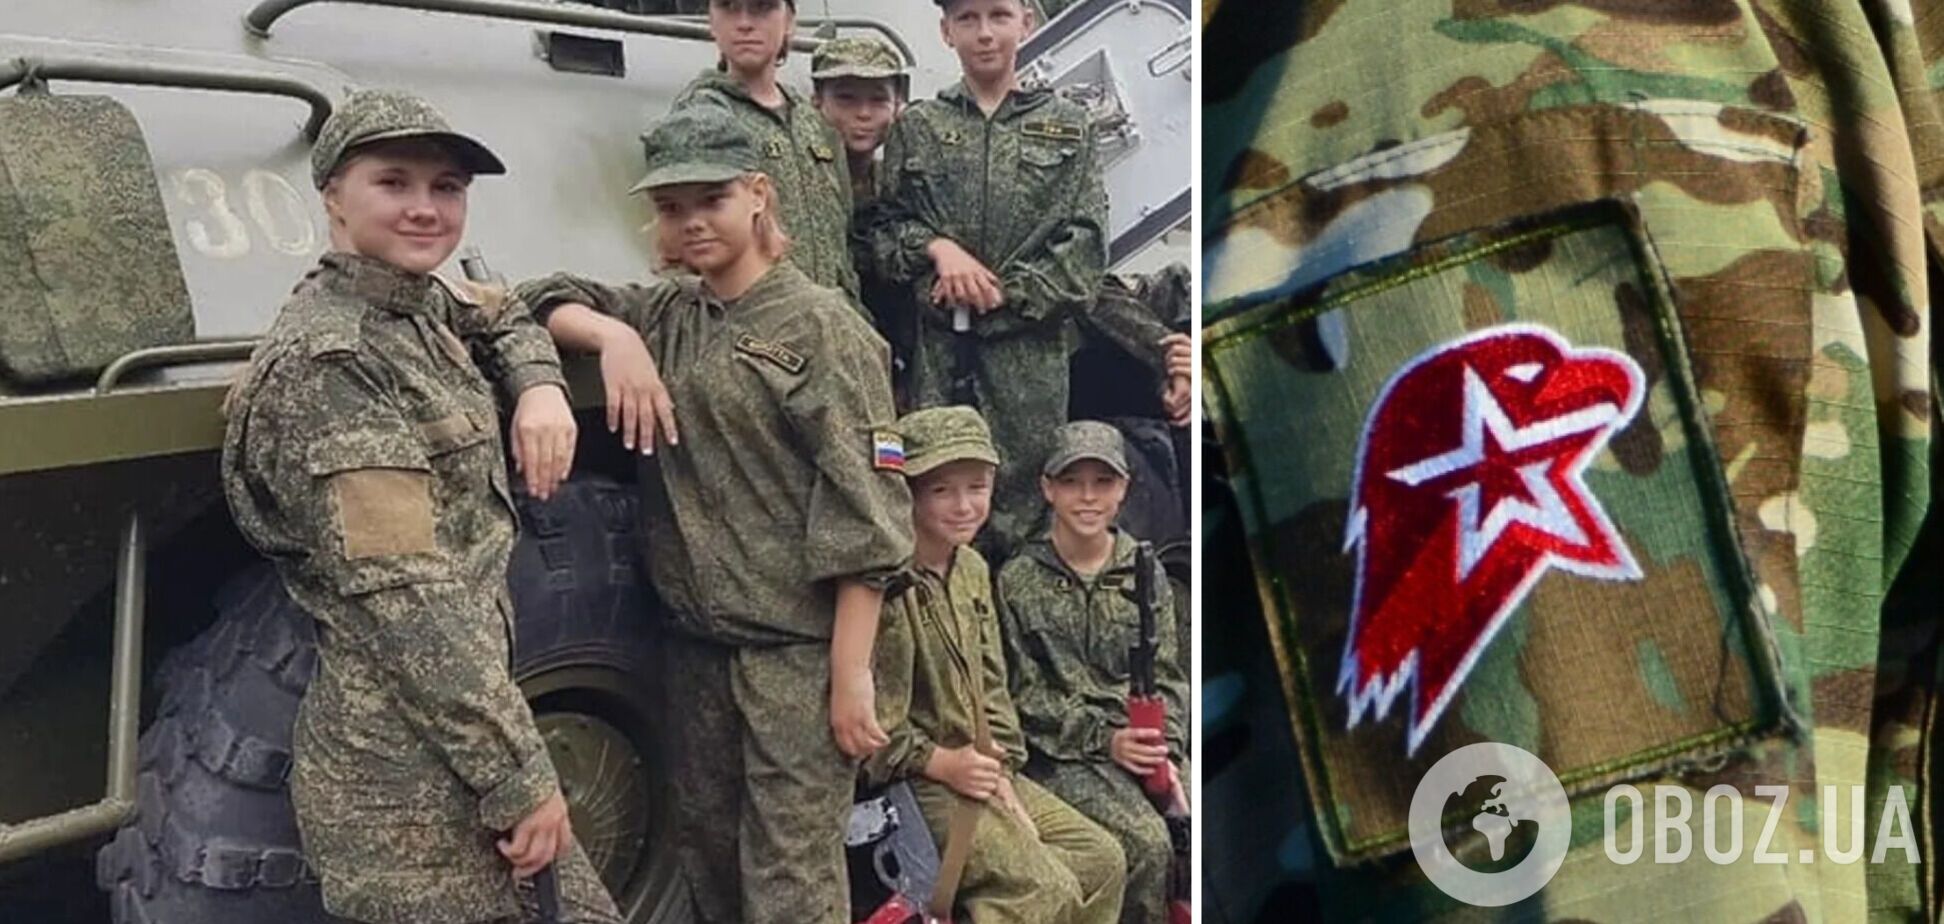 Тренируются стрелять и плести маскировочные сетки: Россия проводит военные учения для детей у границы Норвегии – СМИ